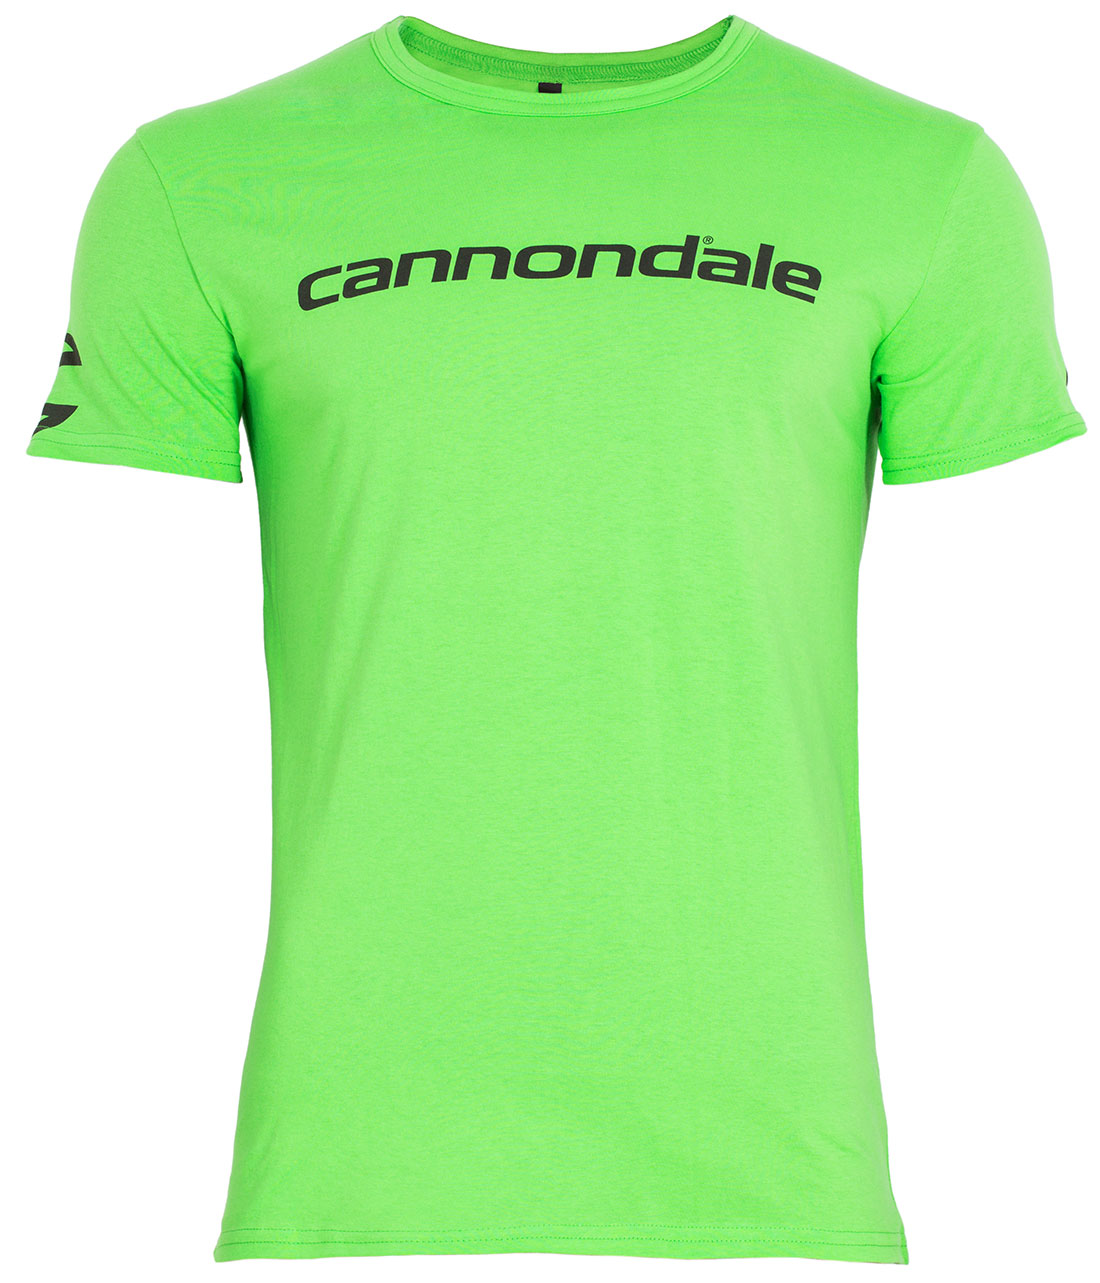 Футболка Cannondale с черным горизонтальным логотипом, зелёная, размер M фото 